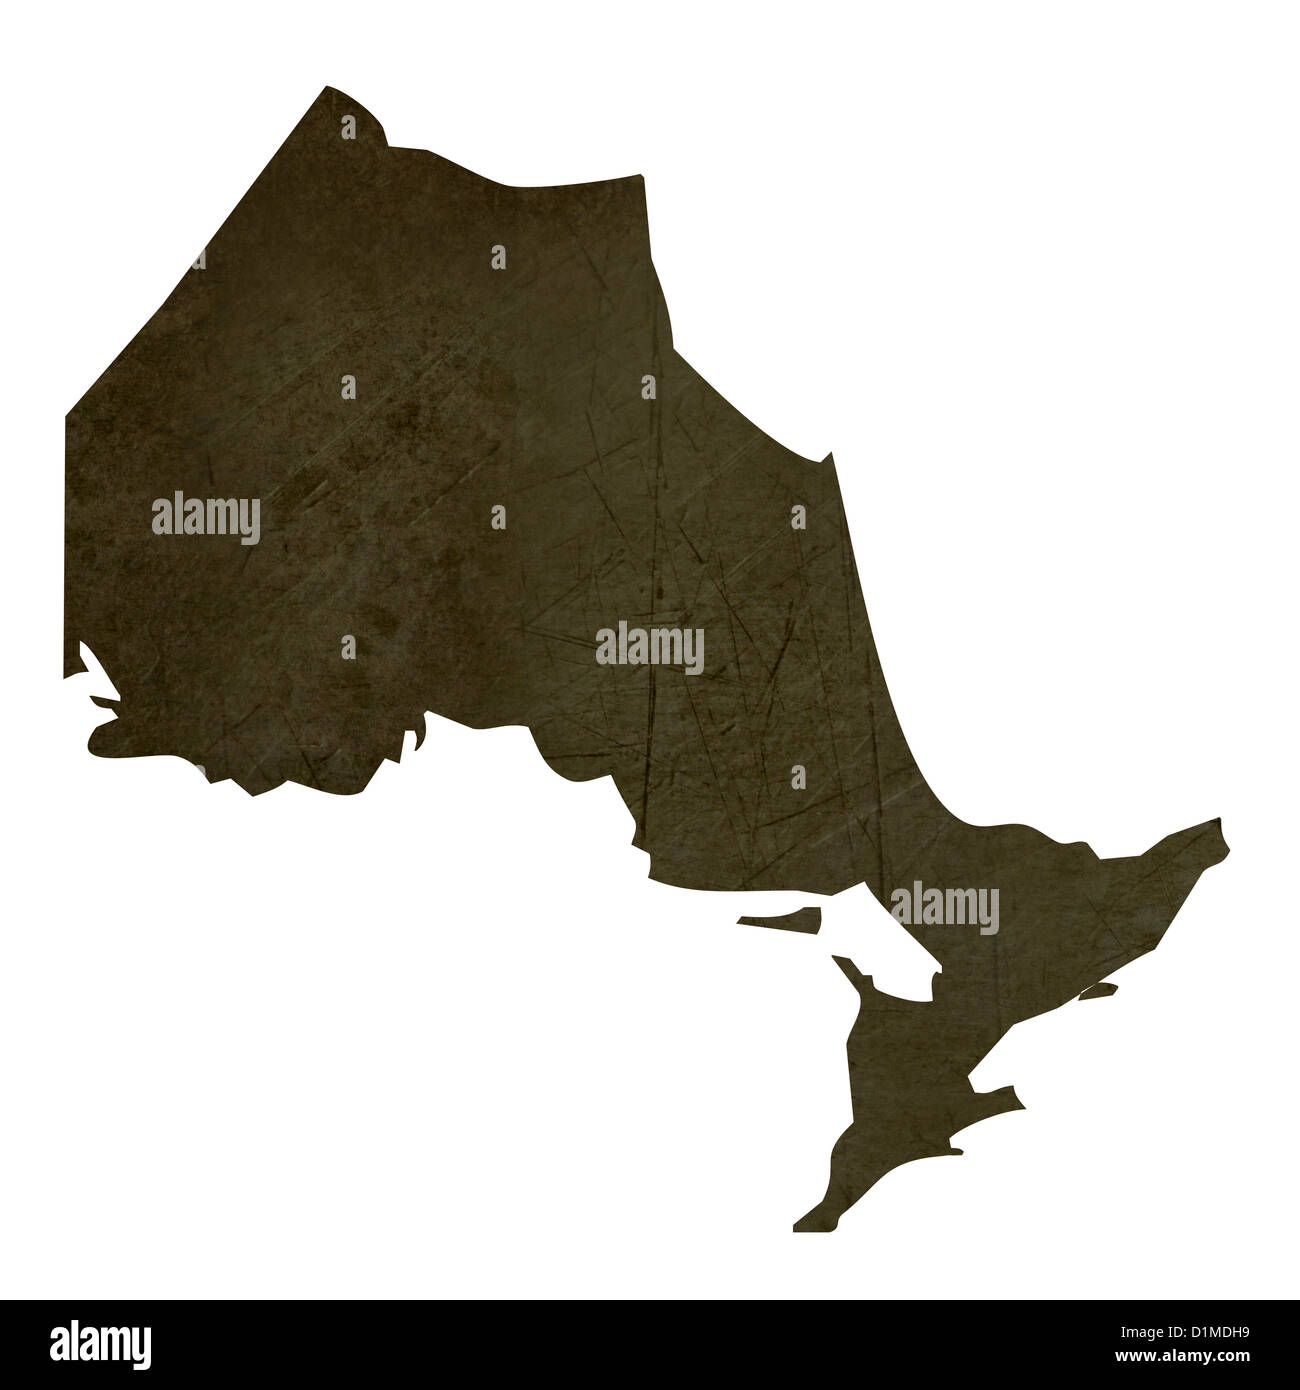 Dunkle Silhouette und strukturierte Karte von Quebec Provinz von Kanada isoliert auf weißem Hintergrund. Stockfoto